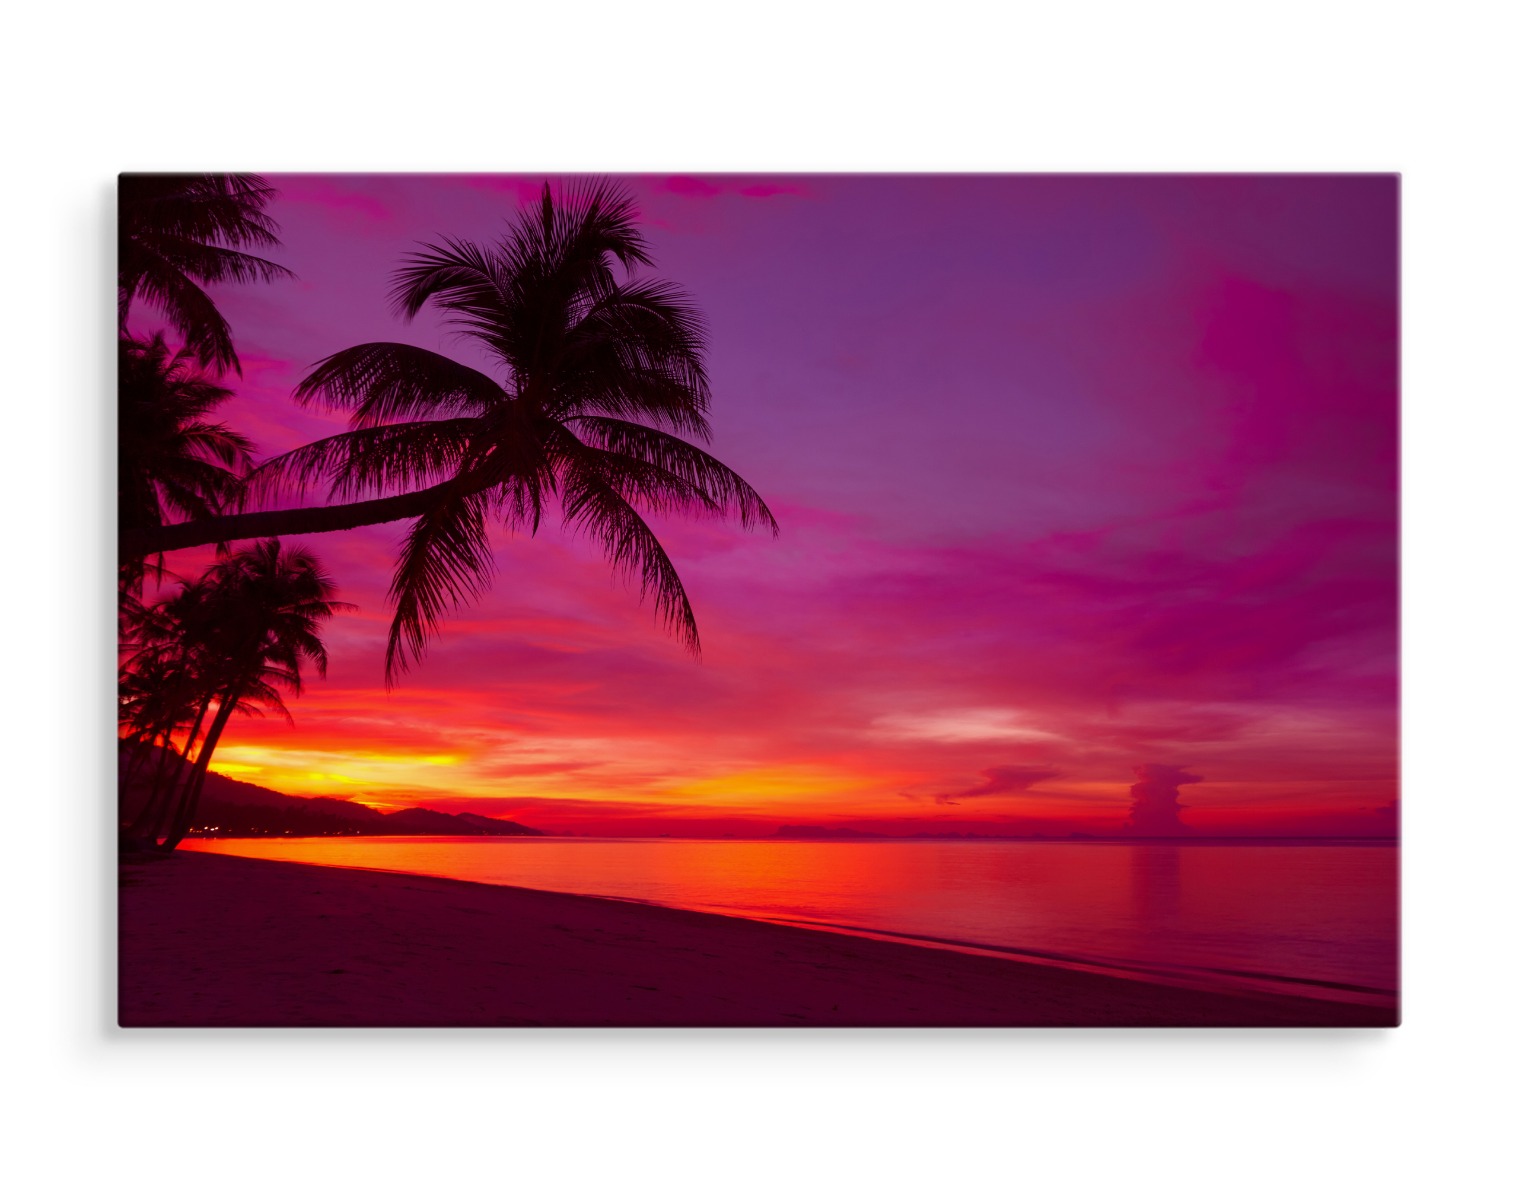 Canvas Leinwand Bilder Xxl Wandbilder Kunstdruck Strand Meer Palmen Abend 553 Ebay 